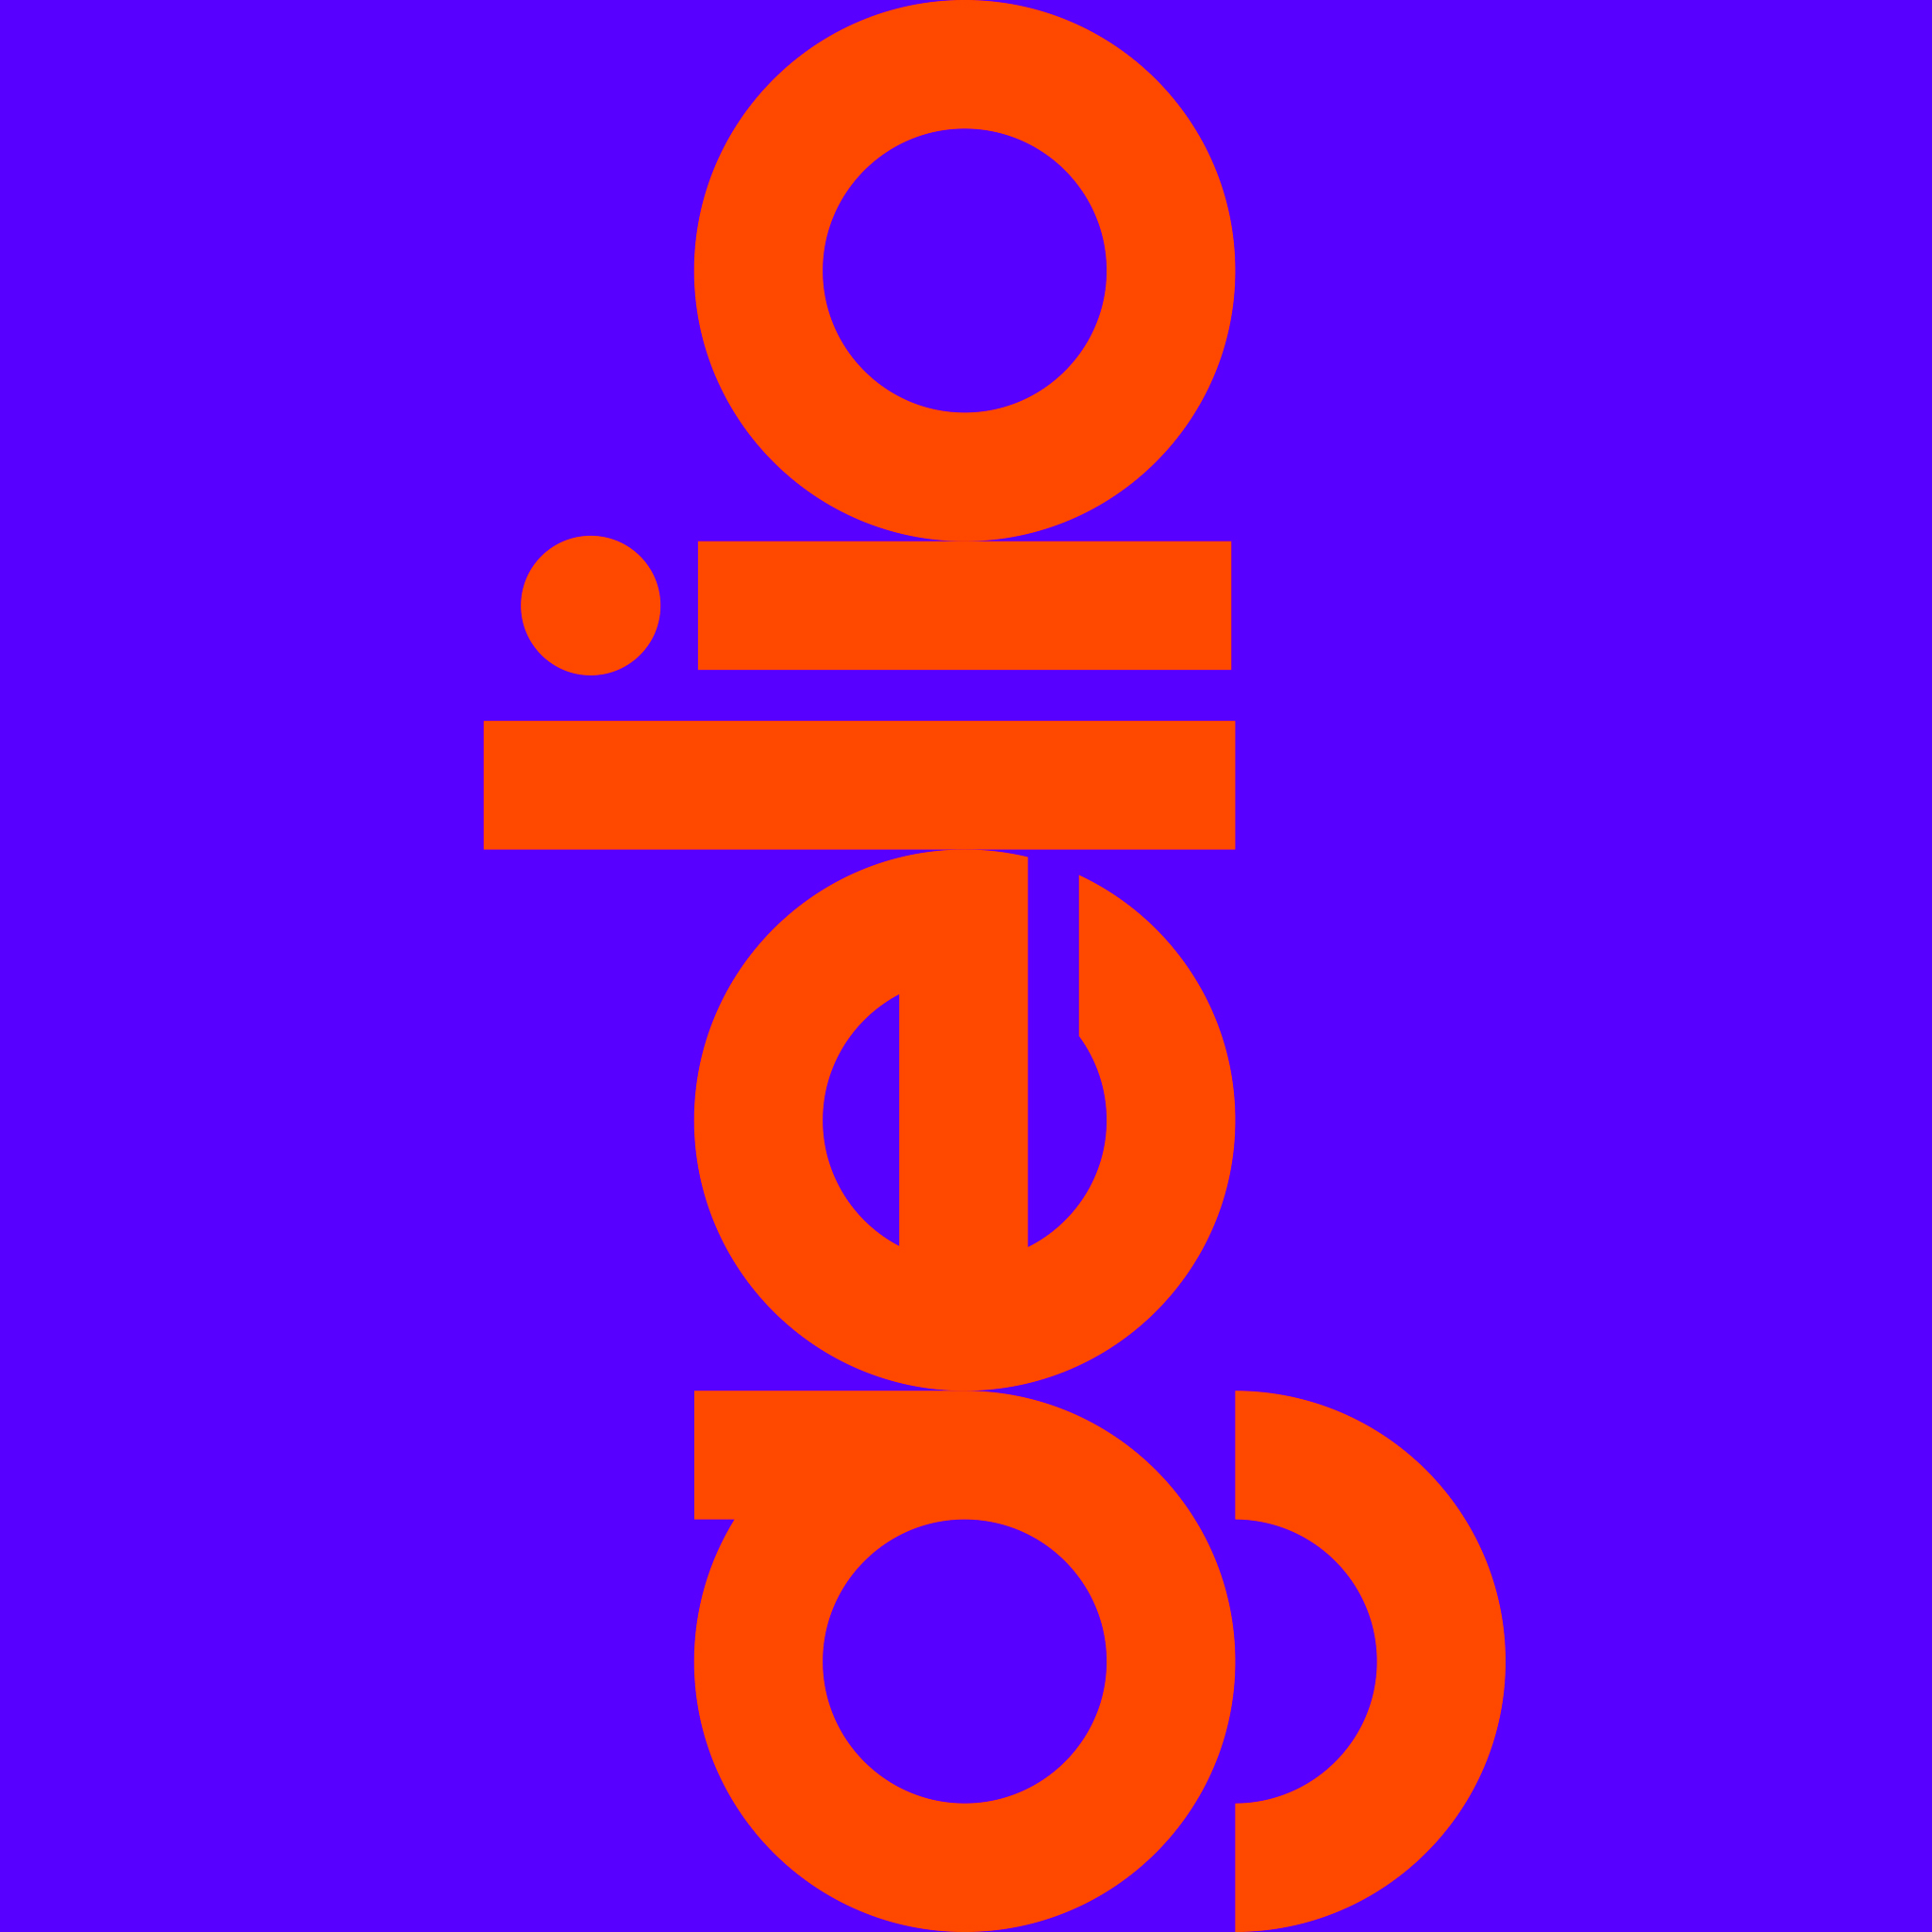 autograff-design-graphique-graphiste-toulouse-france-logo-identite-gelio-agence-communication-orange-bleu